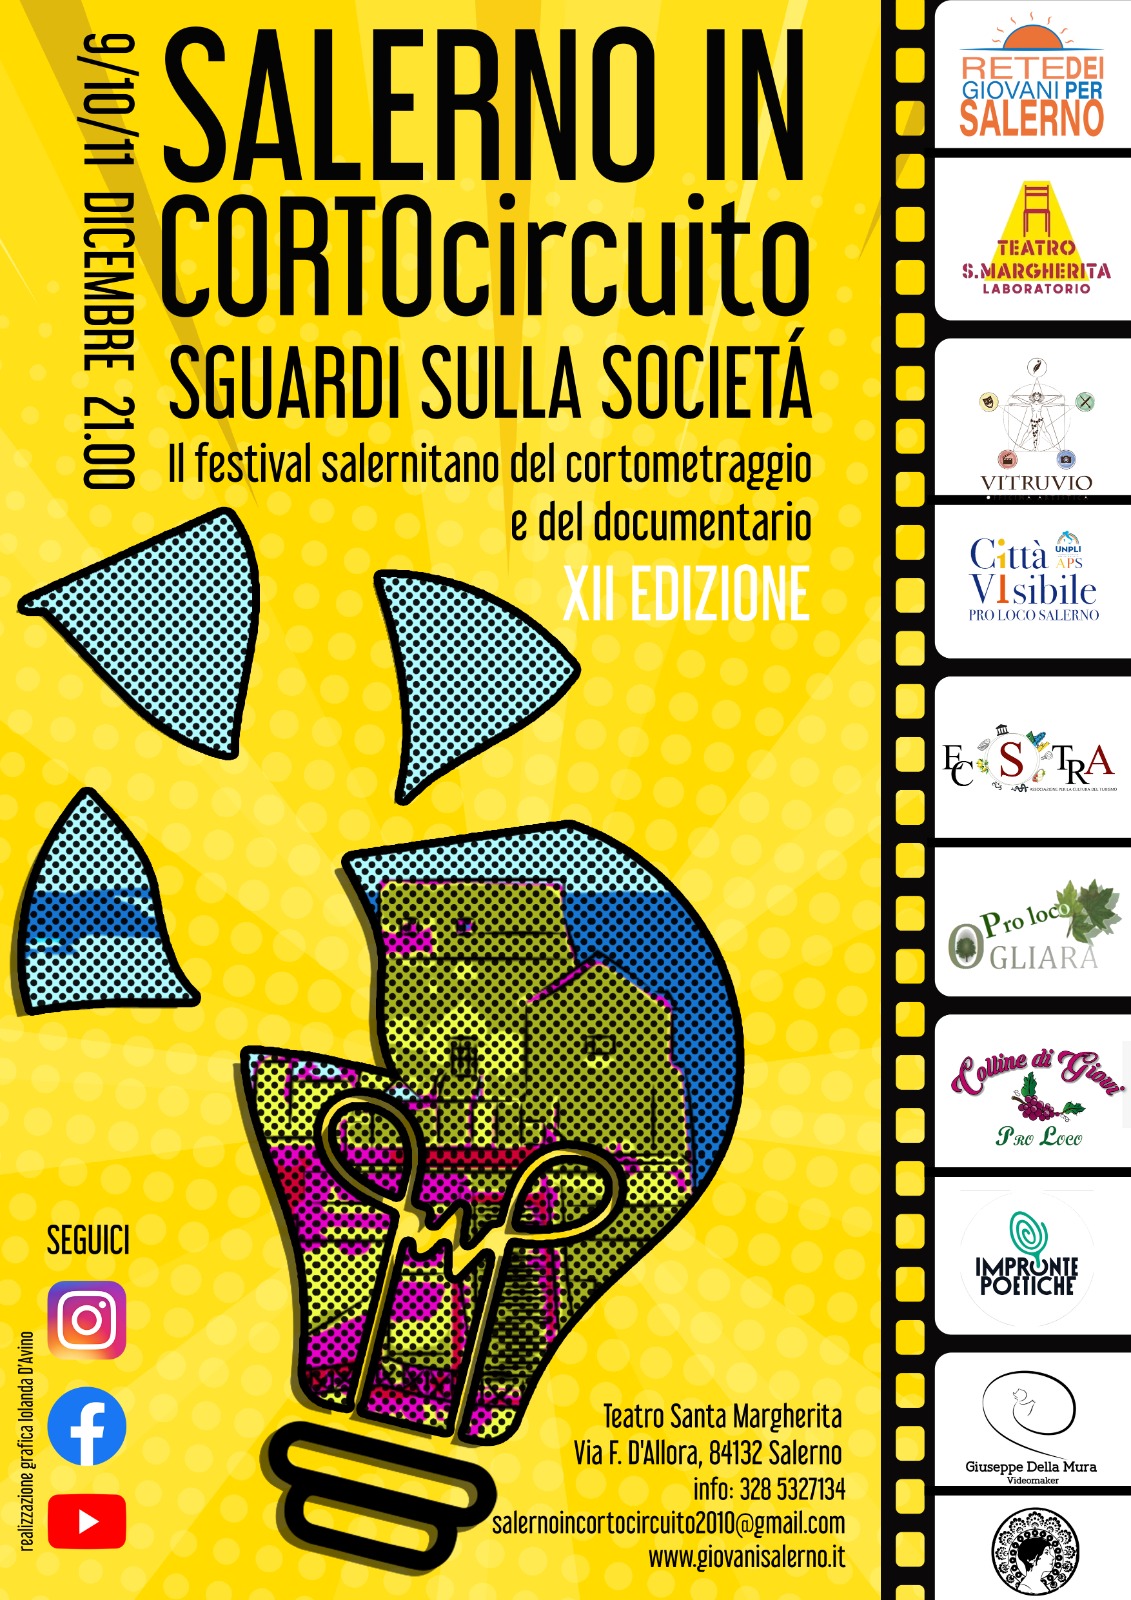 Salerno in CORTOcircuito: domani la presentazione della XII edizione